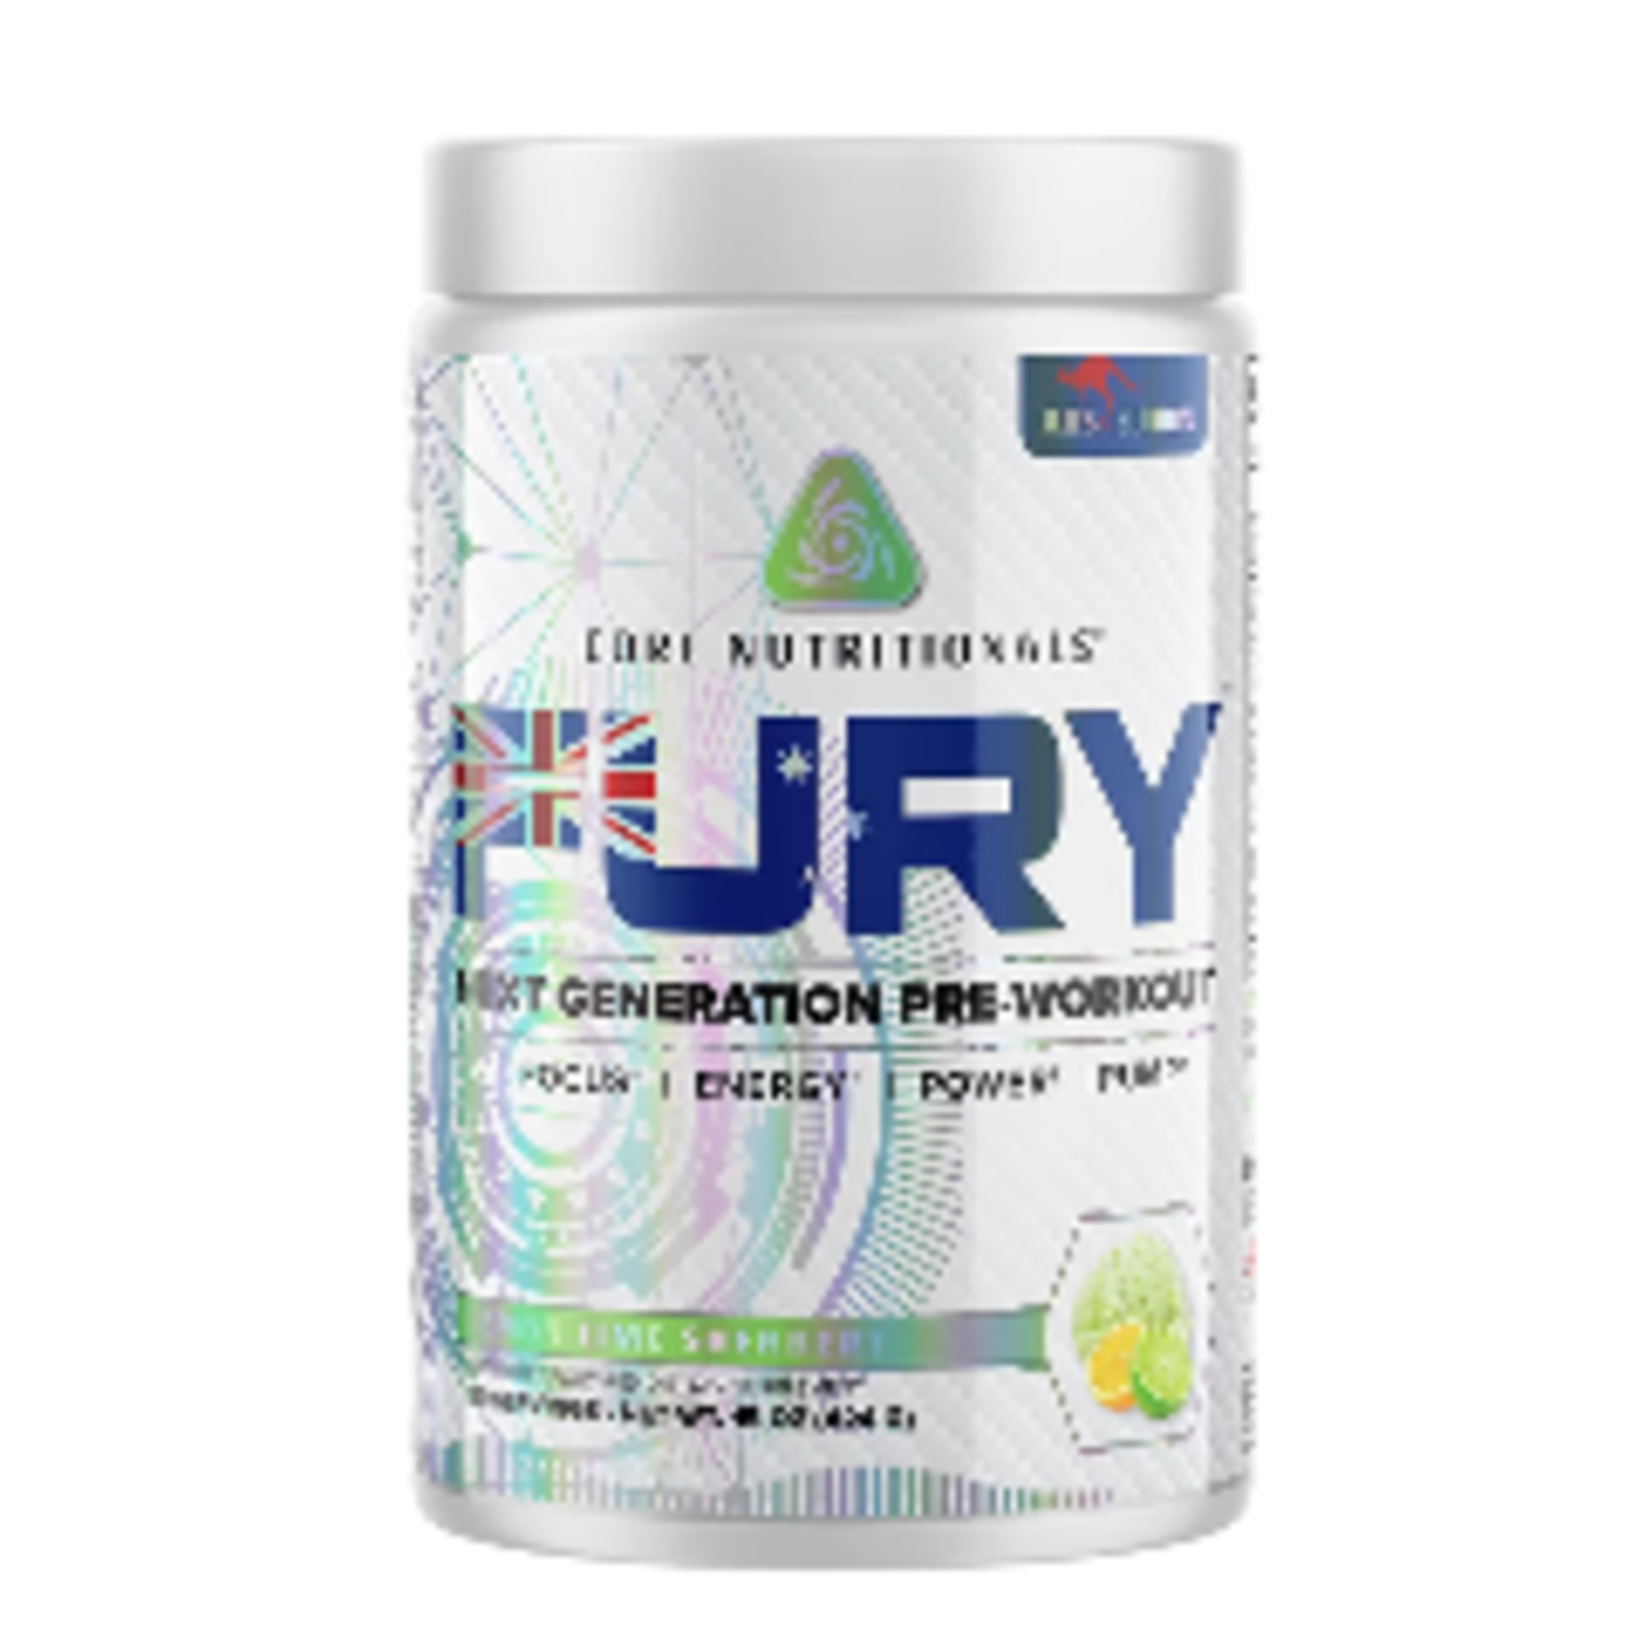 Core Nutritionals Core Fury Aus Edition